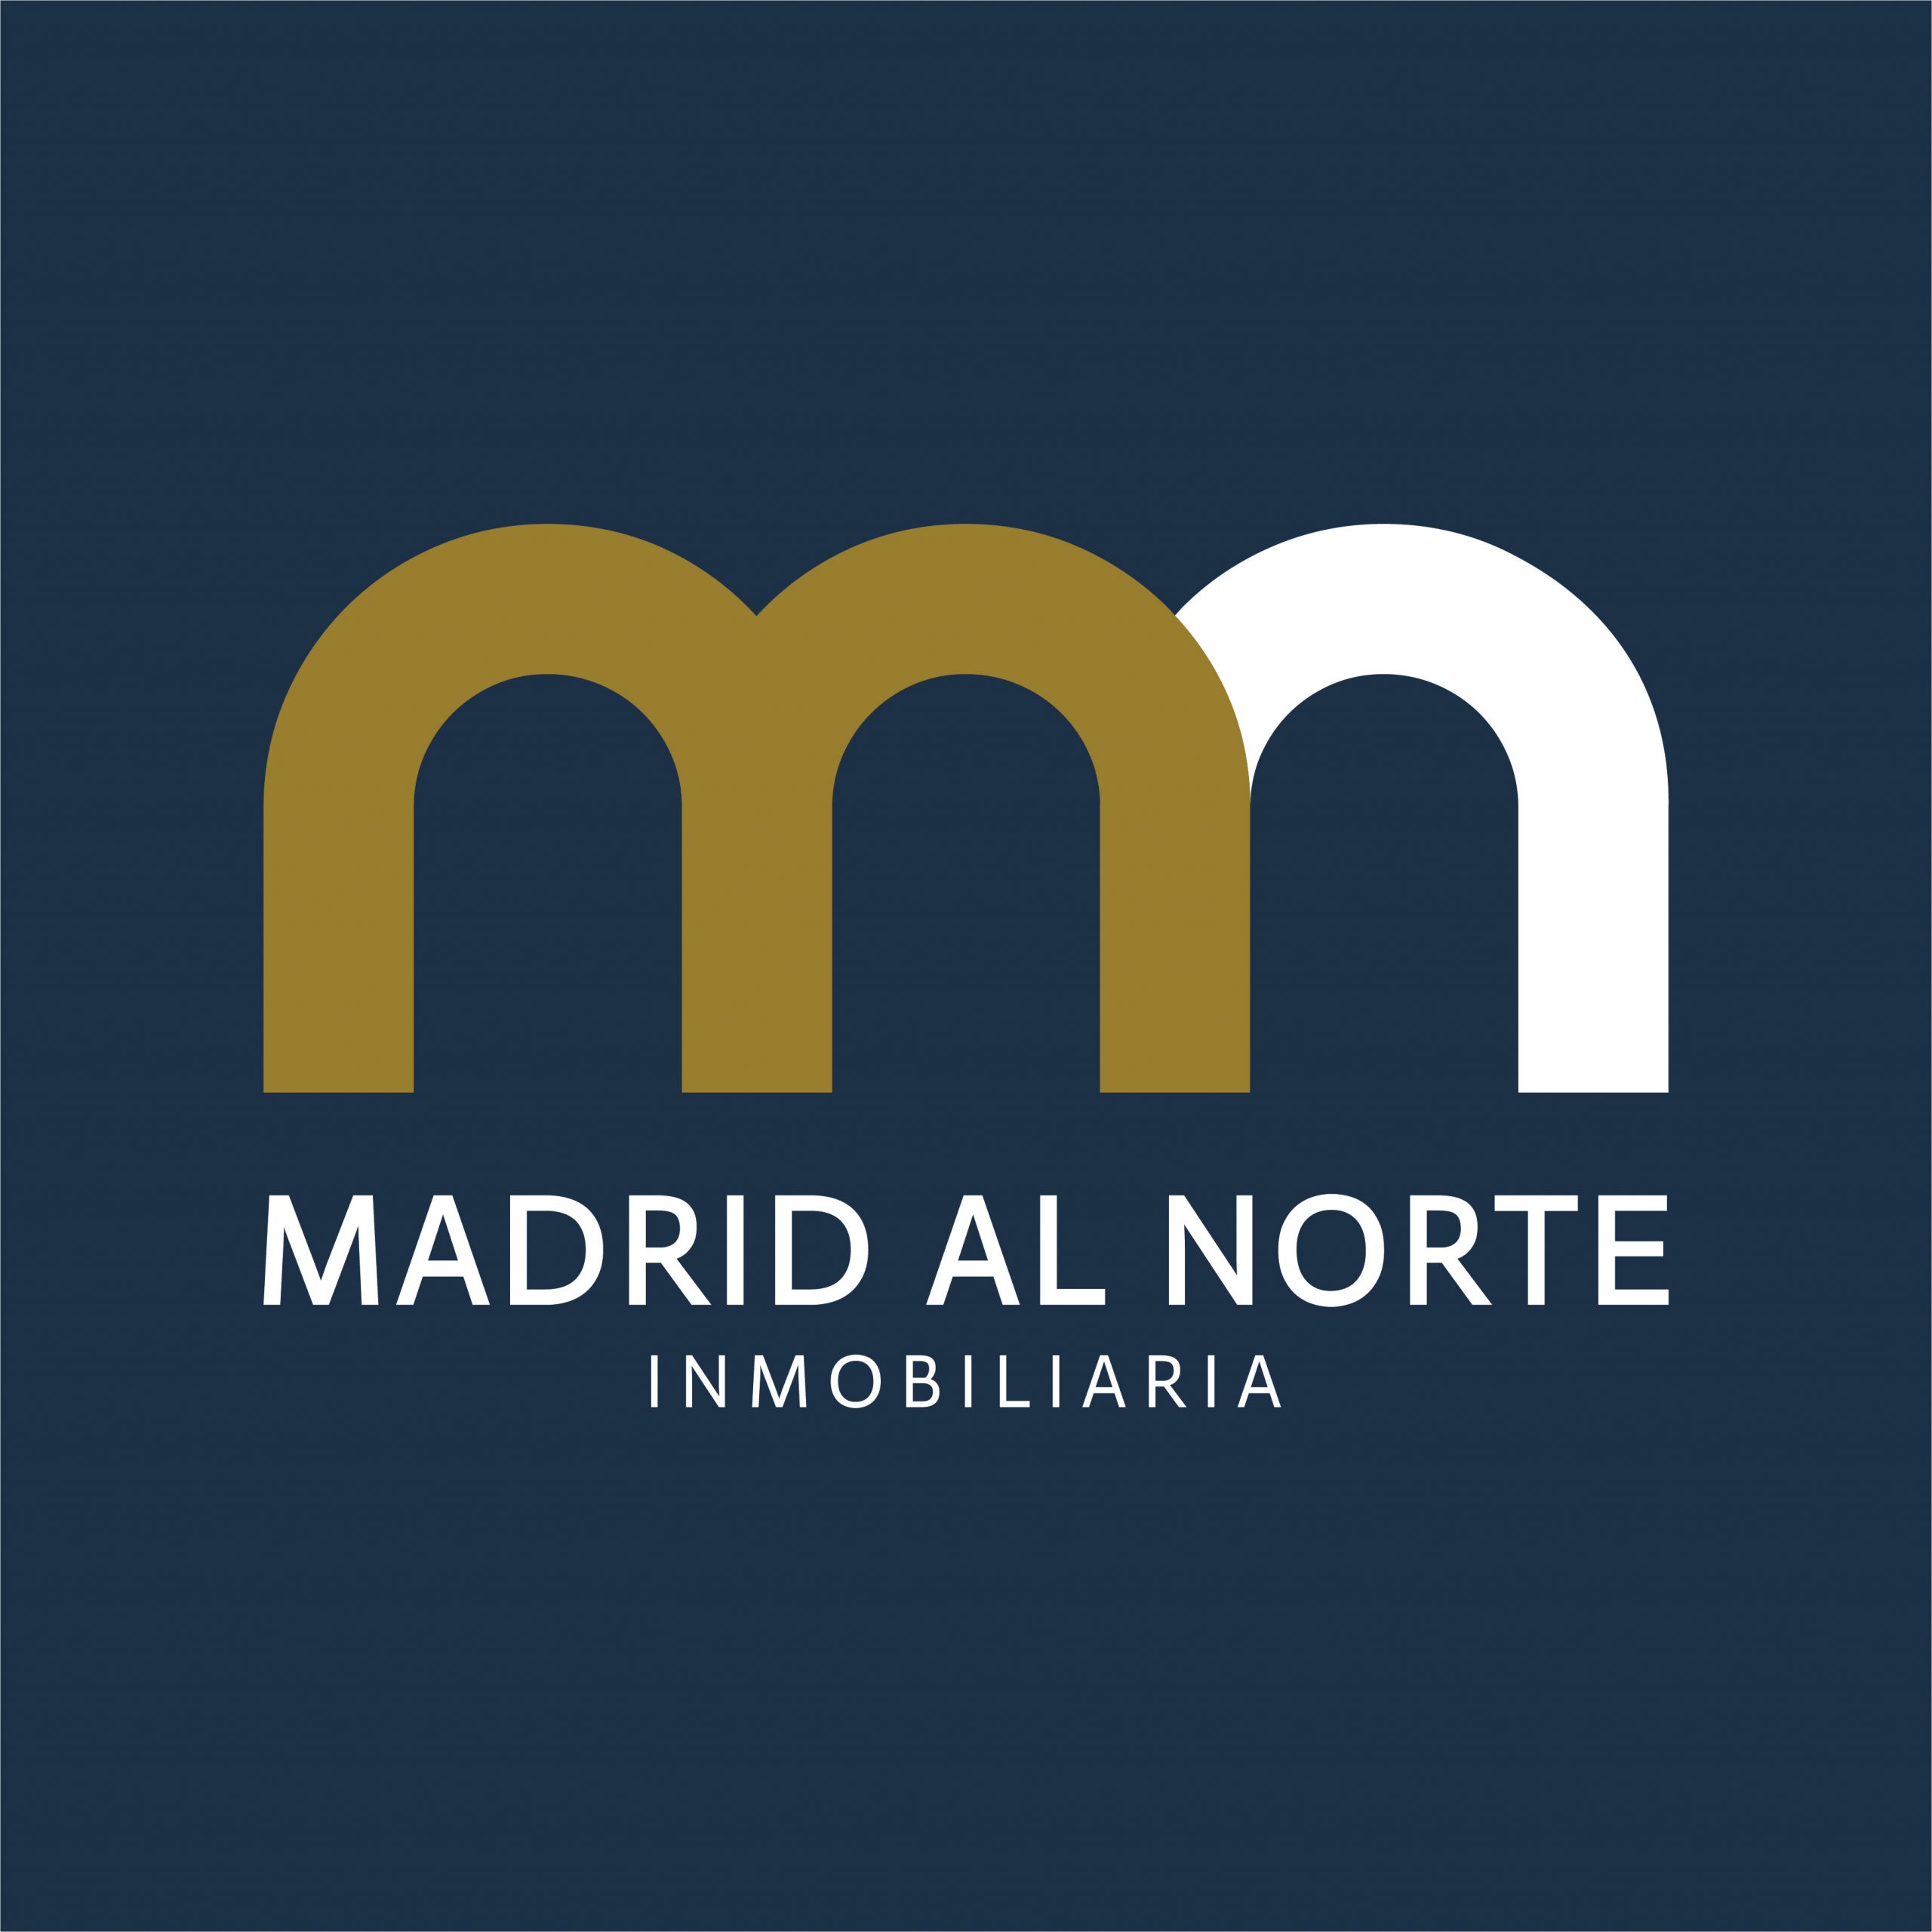 MADRID AL NORTE Servicios Inmobiliarios www.madridalnorte.es